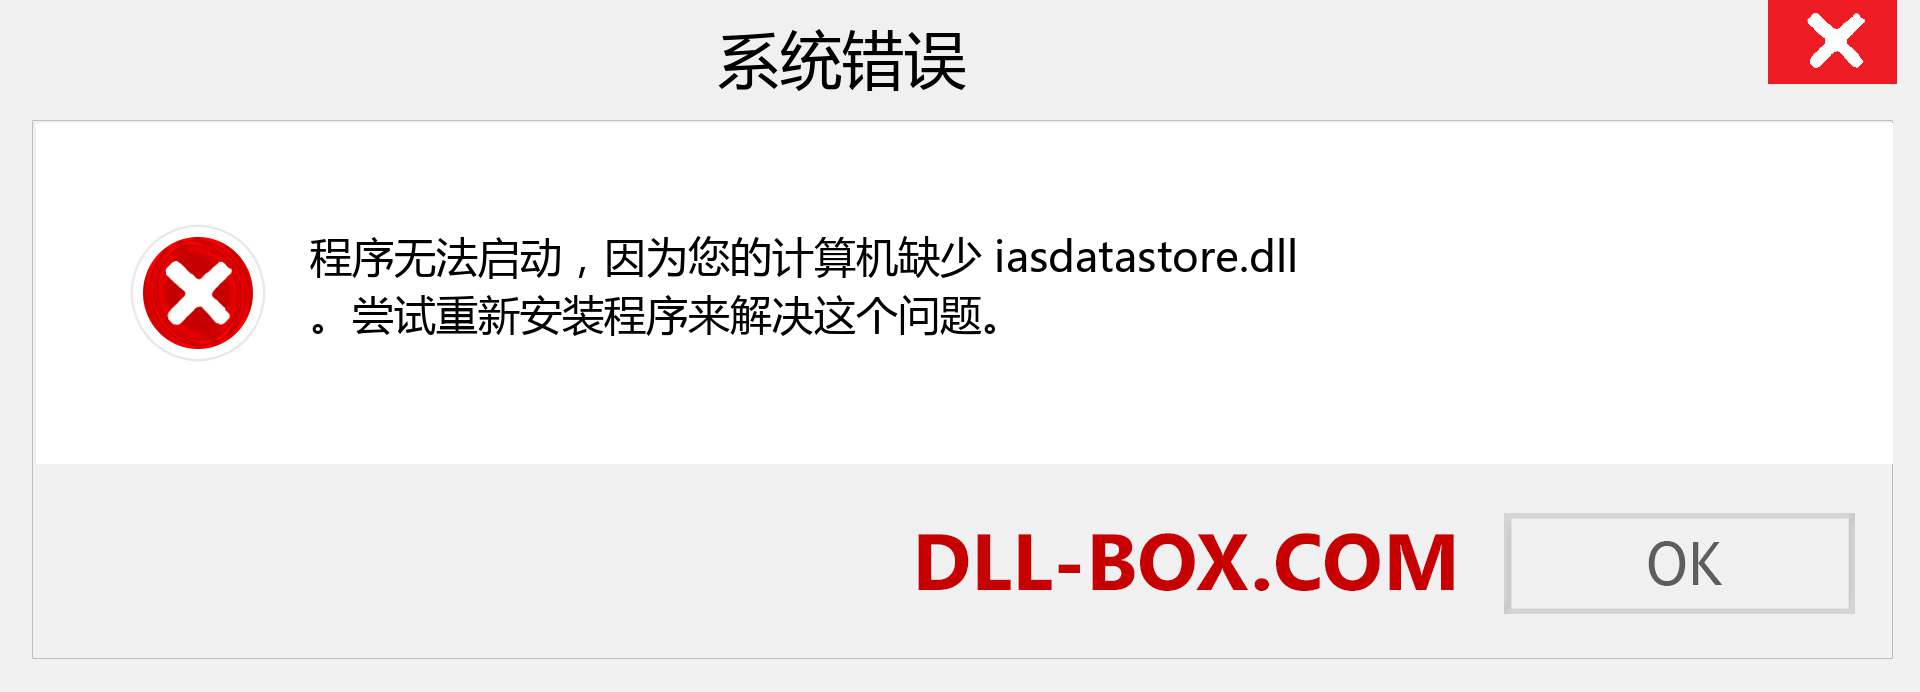 iasdatastore.dll 文件丢失？。 适用于 Windows 7、8、10 的下载 - 修复 Windows、照片、图像上的 iasdatastore dll 丢失错误